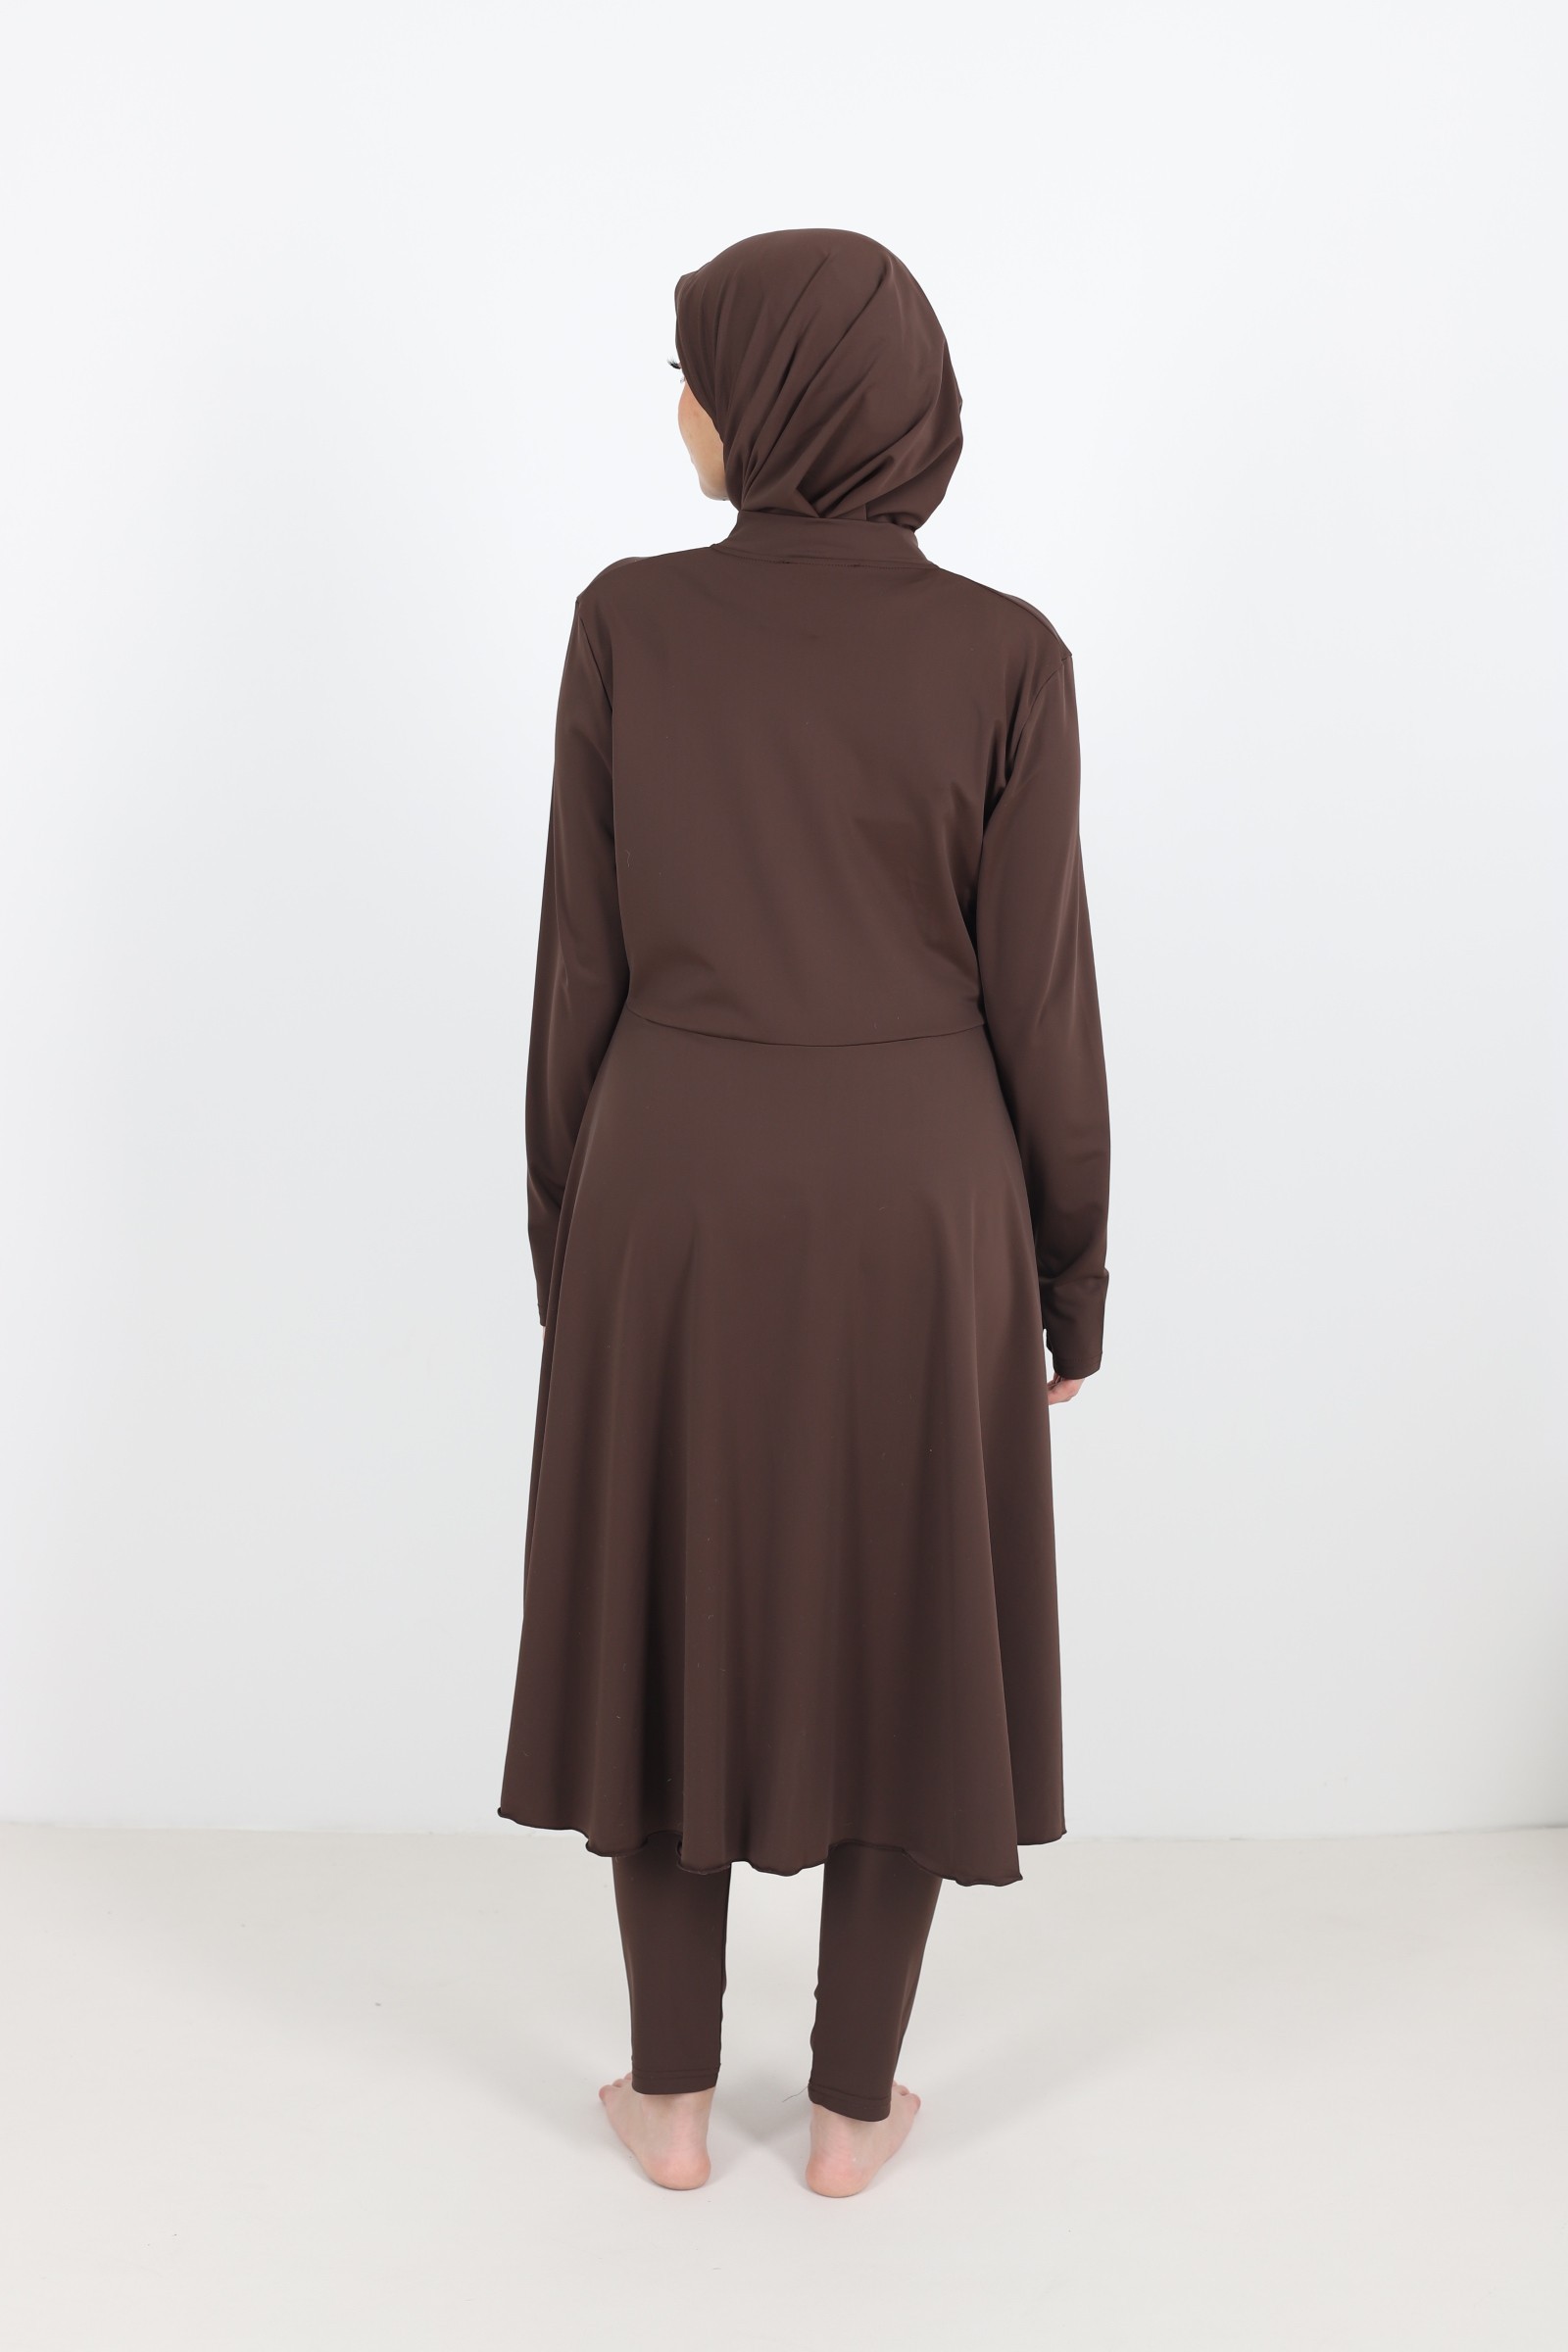 burkini femme voilée pas chère modest maillot d ebain islamique